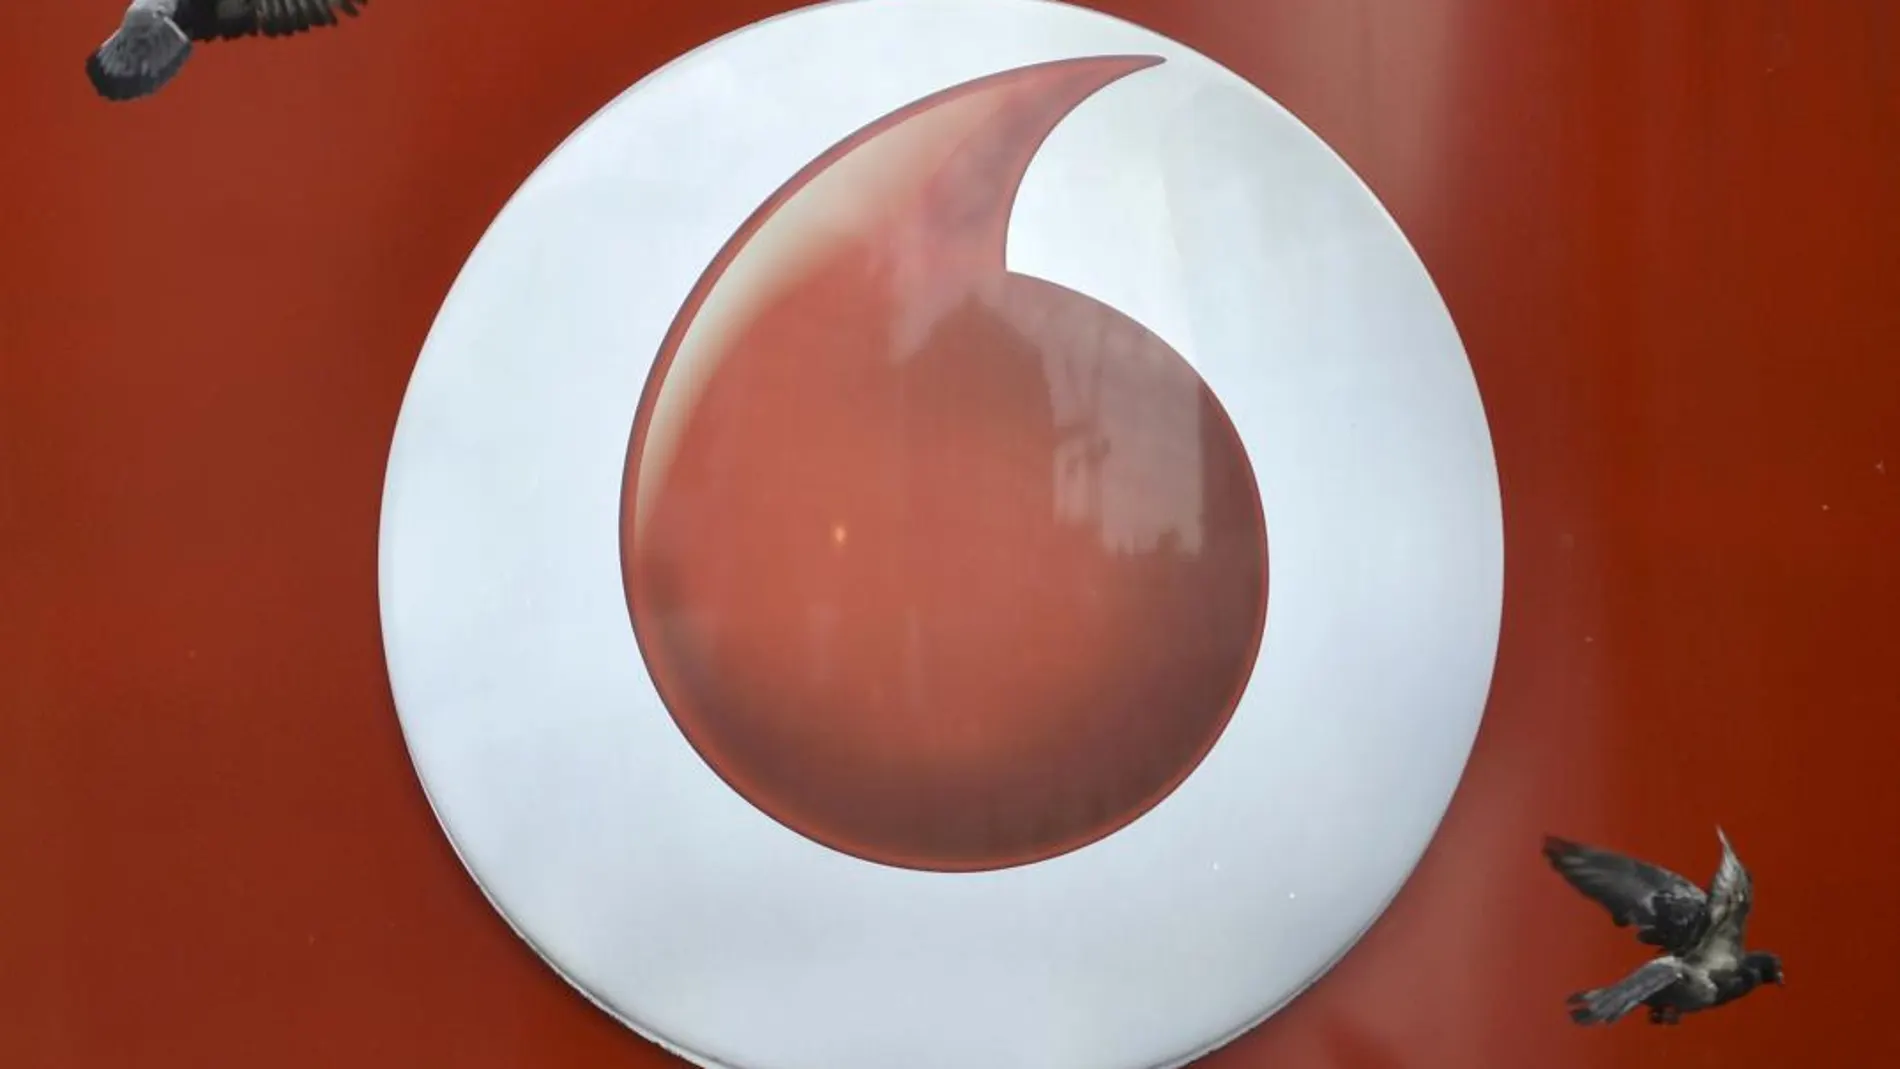 Vodafone, junto a Orange y Telefónica suben las tarifas a principio de años/Reuters